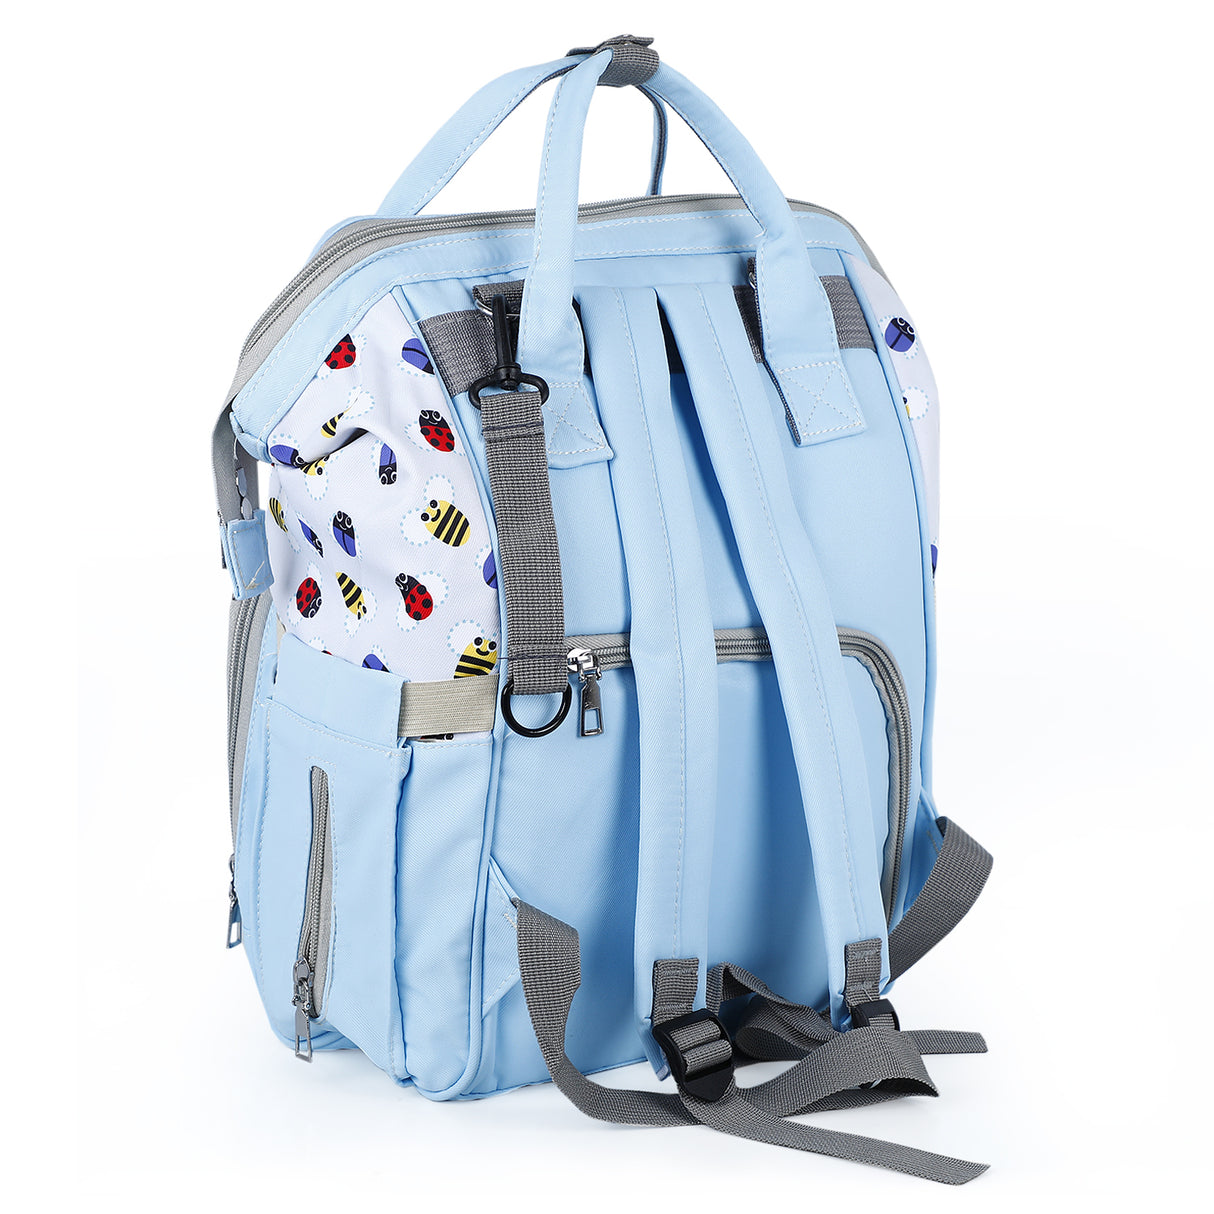 Baby Moo Ladybug Maternity Backpack Diaper Bag